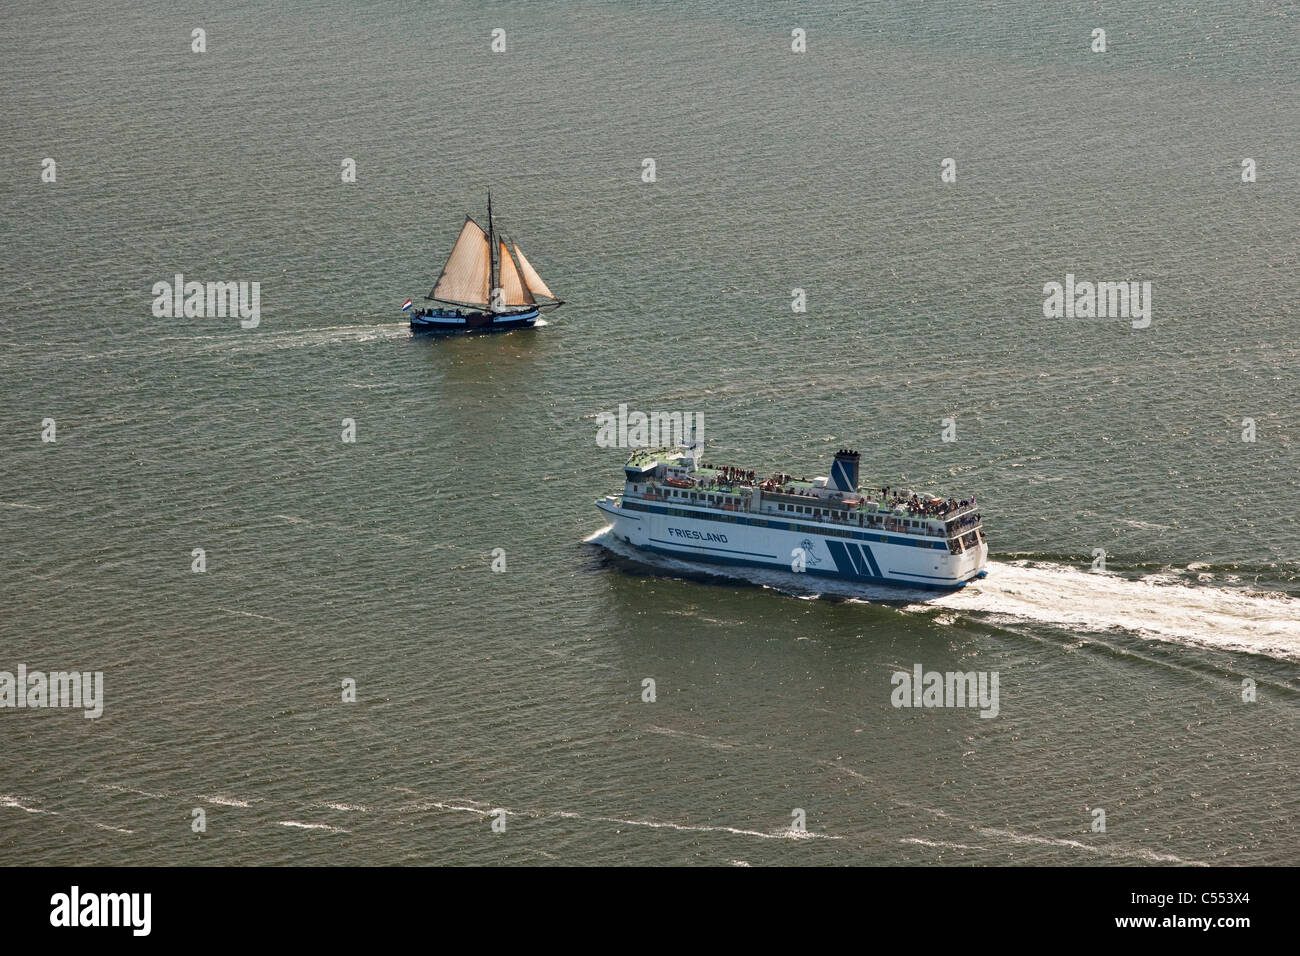 Paesi Bassi, Isola di Terschelling, il Wadden Sea. La bassa marea. Traghetto tradizionale e del carico della nave a vela, crociere turistiche. Antenna. Foto Stock